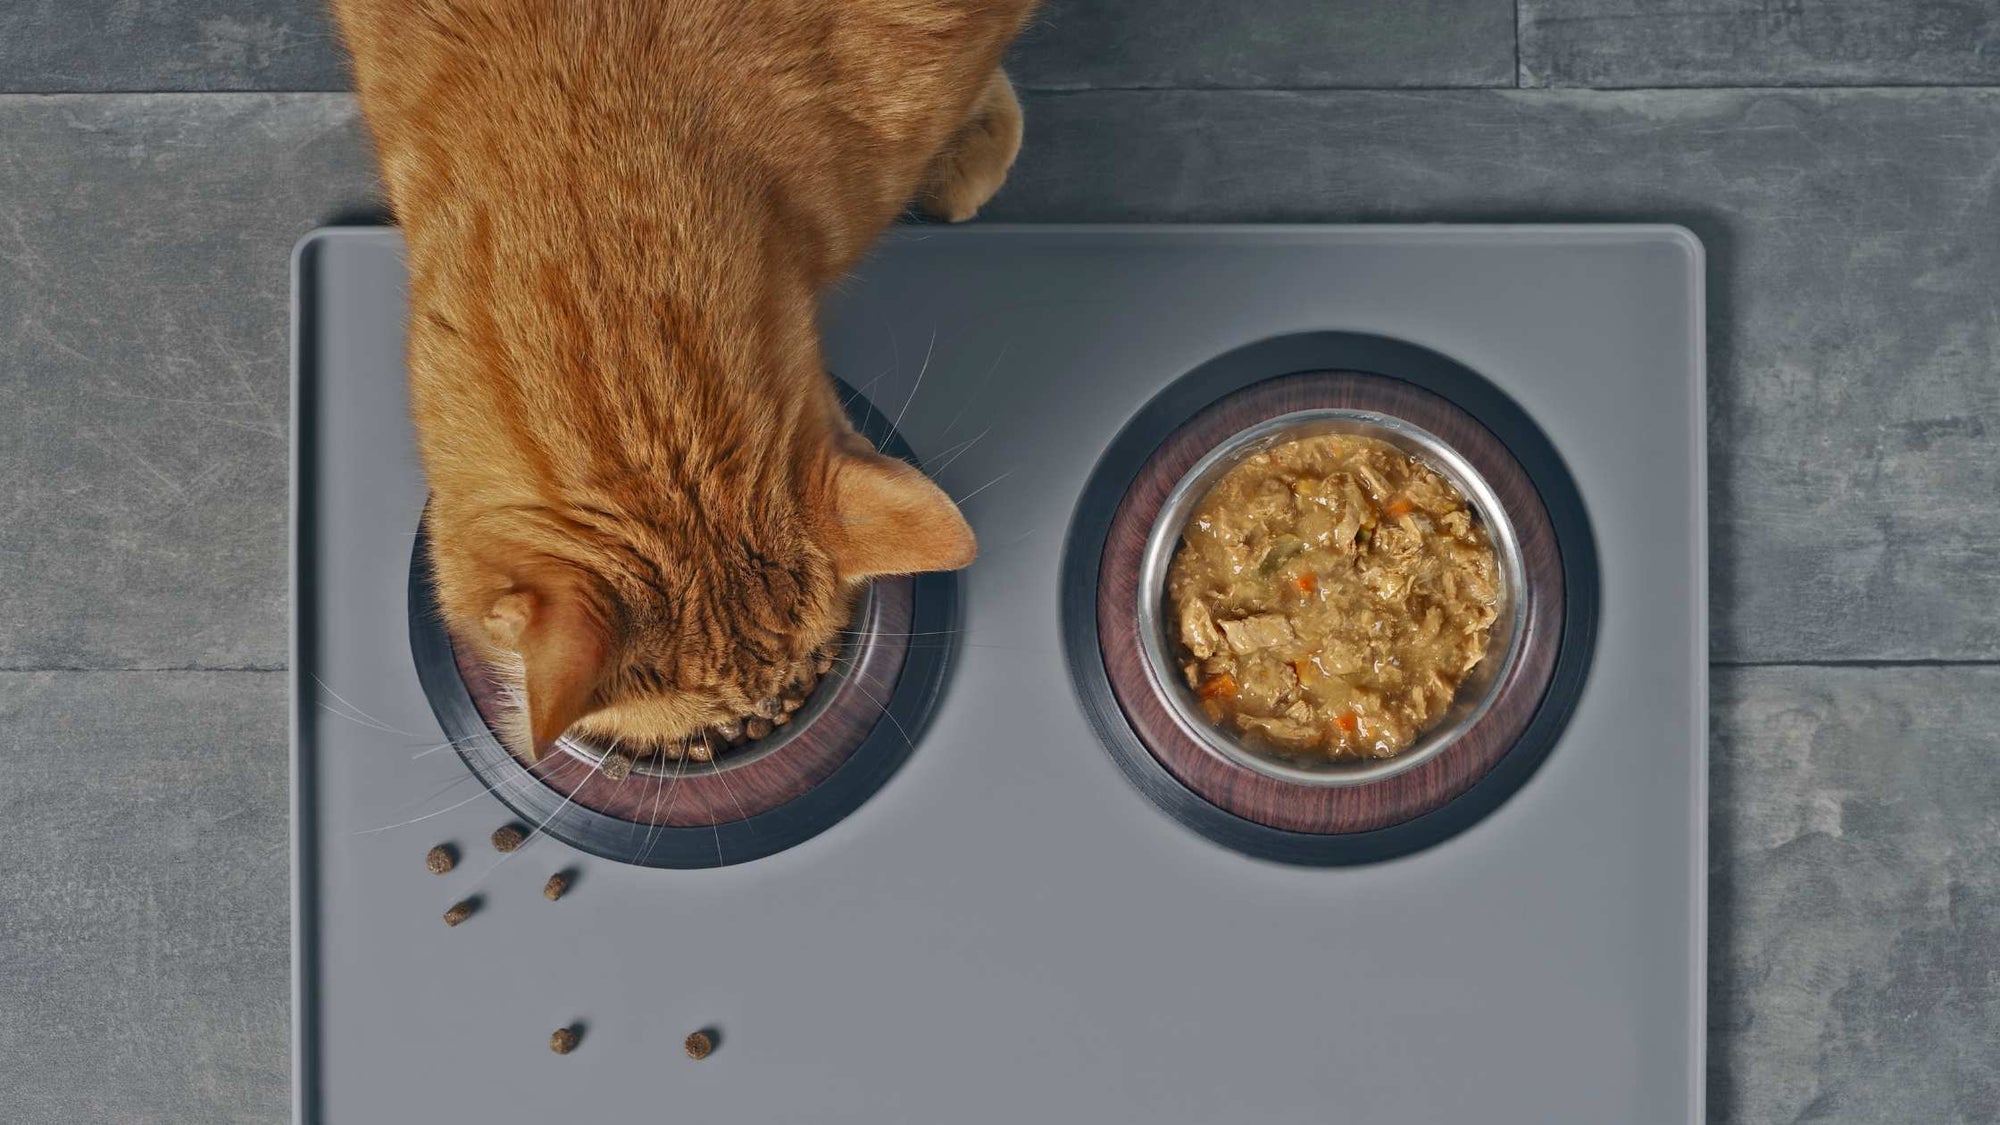 Mixed feeding for cats